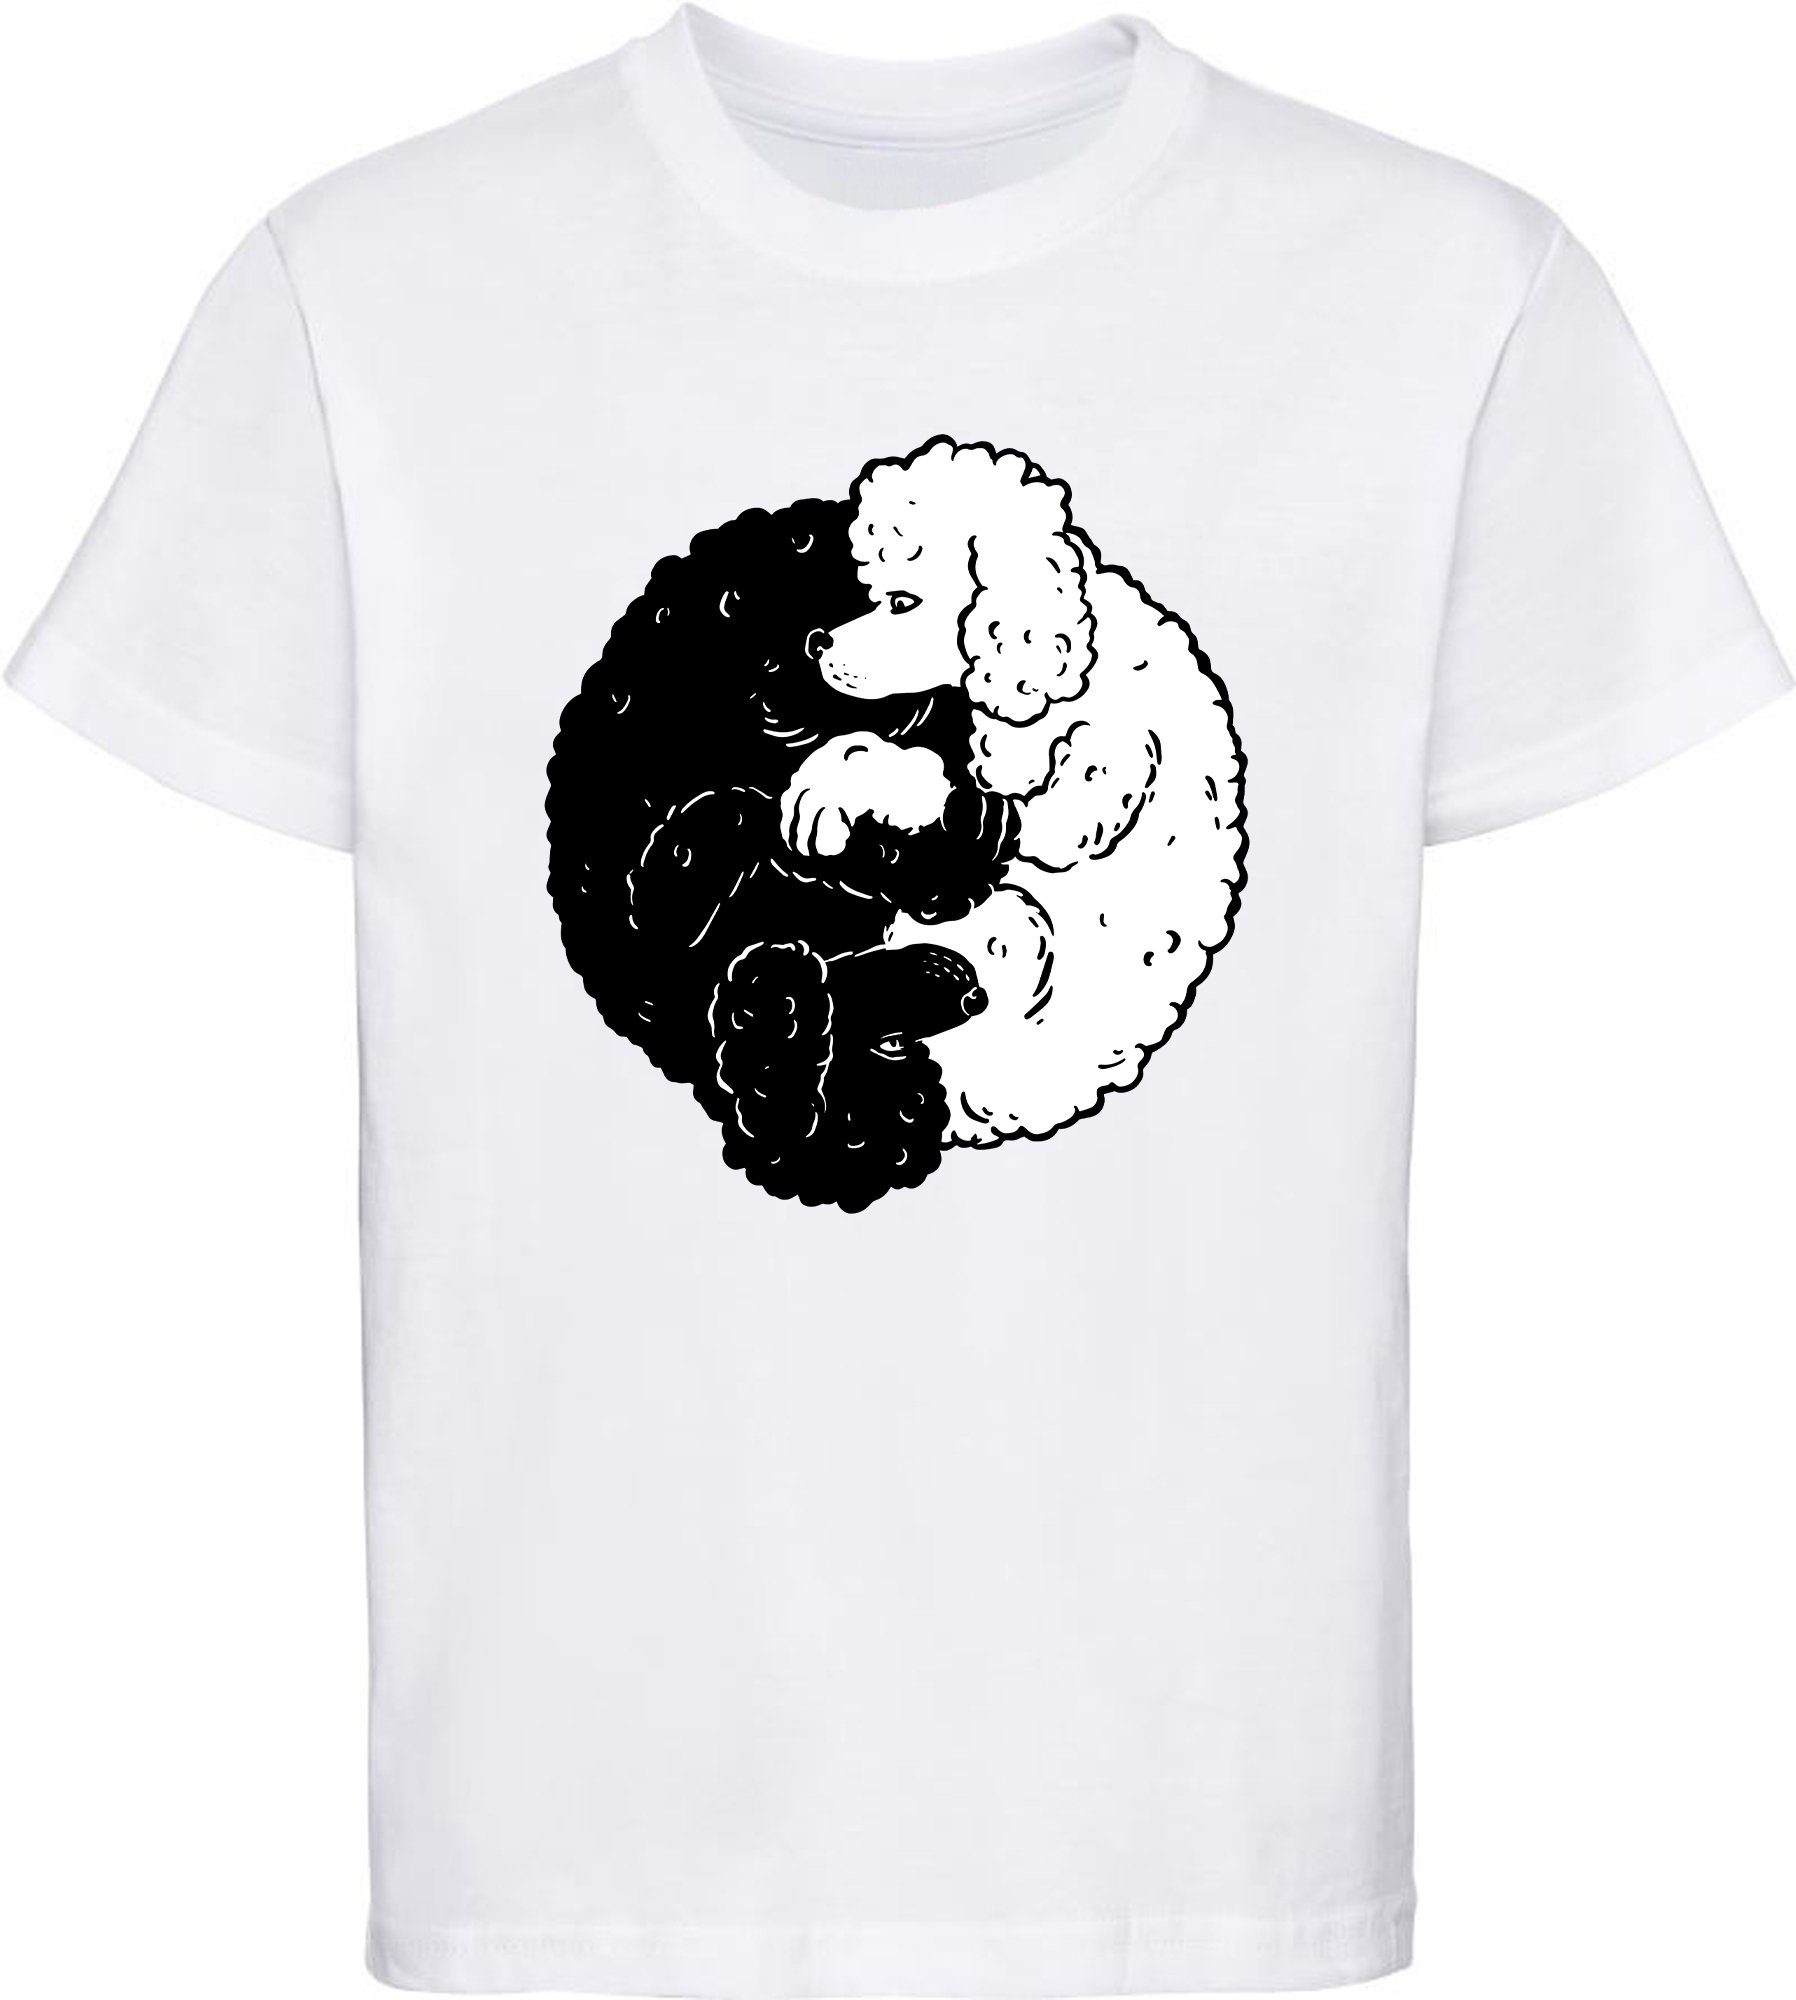 MyDesign24 Print-Shirt Kinder Hunde T-Shirt bedruckt - Yin Yang Pudel Baumwollshirt mit Aufdruck, i235 weiss | T-Shirts